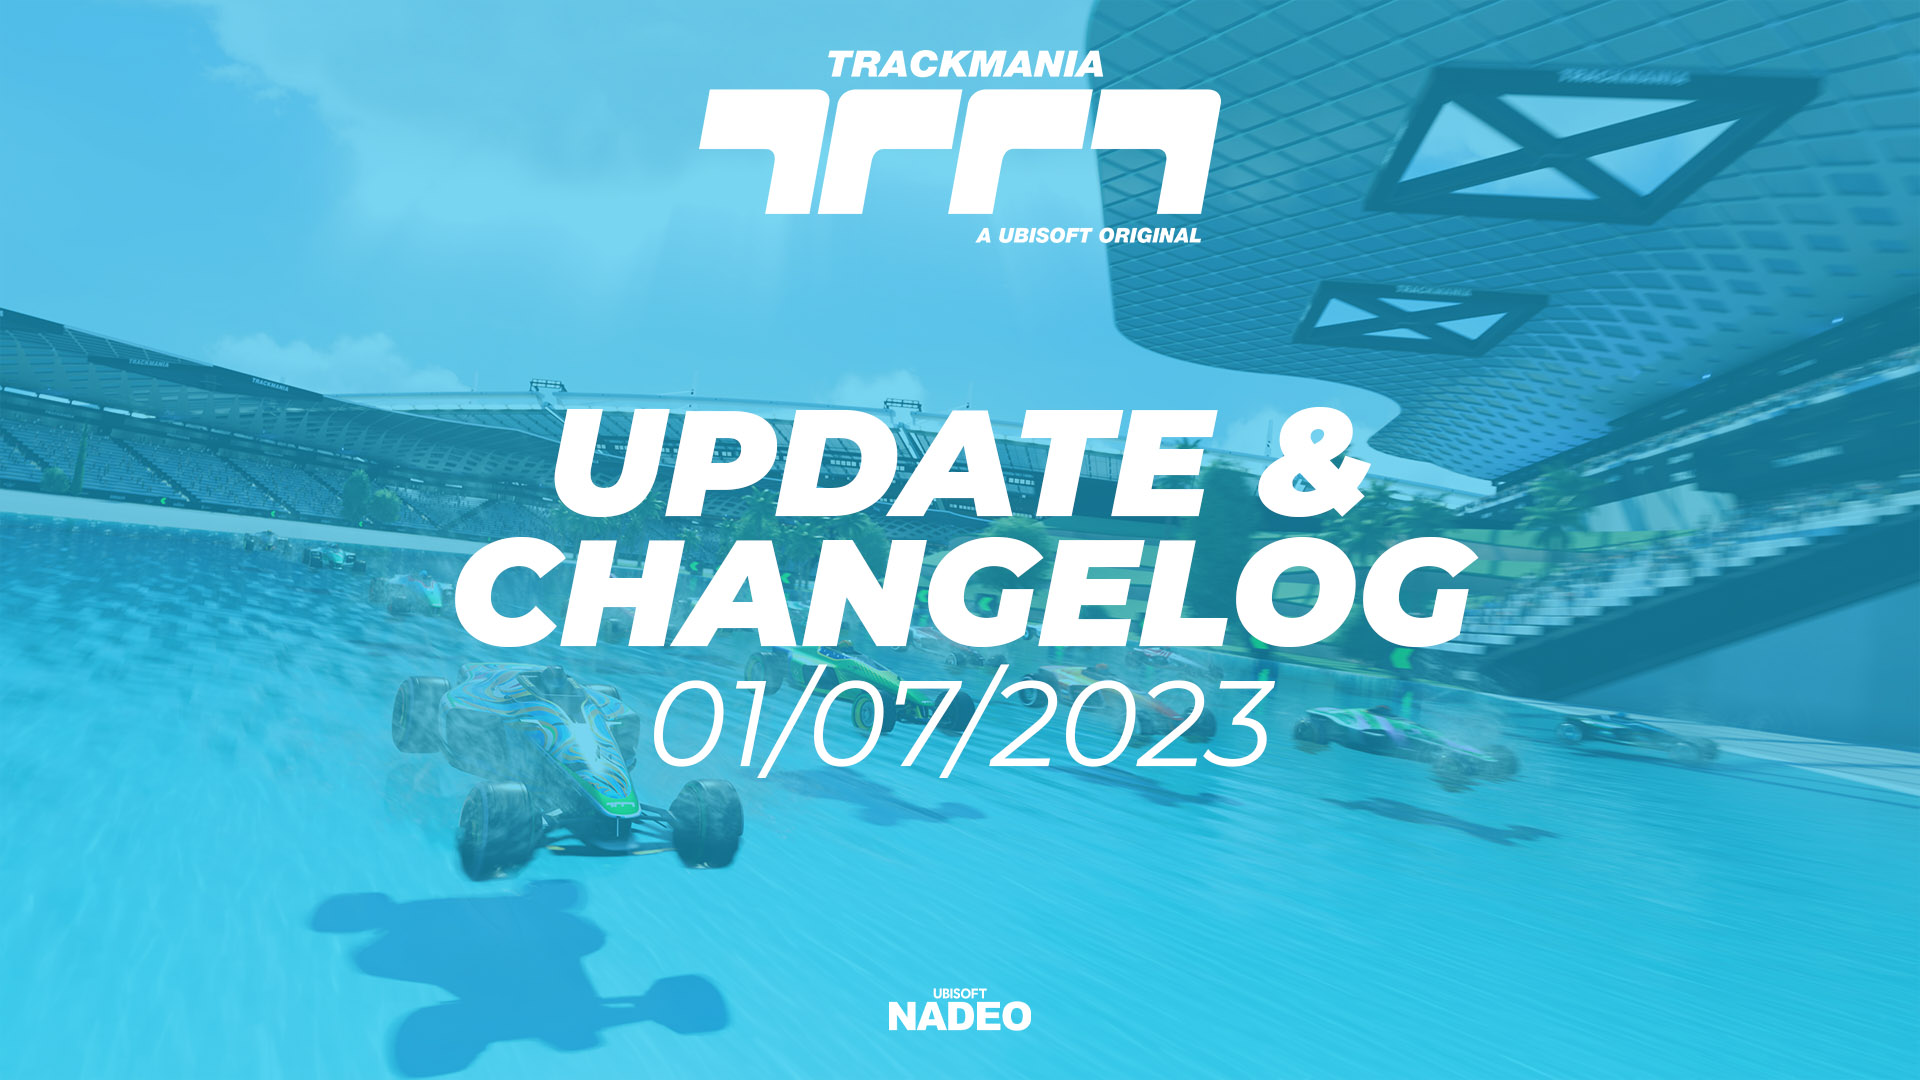 Summer 2023 update & changelog